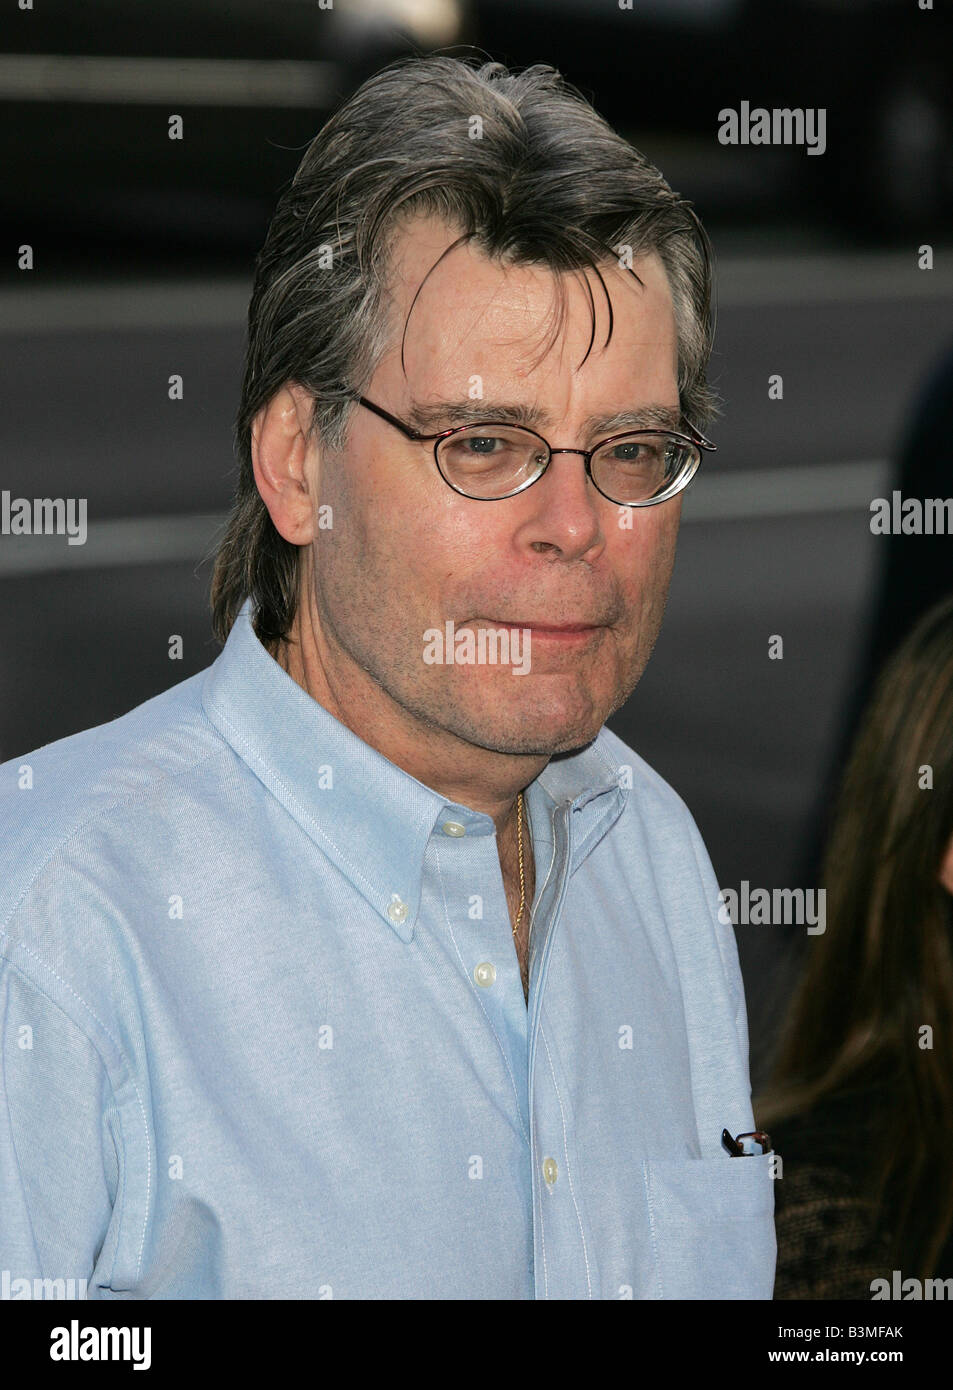 Escritor estadounidense Stephen King, productor de cine y músico, conocido por su trabajo en el género de terror, visto aquí en 2007 Foto de stock